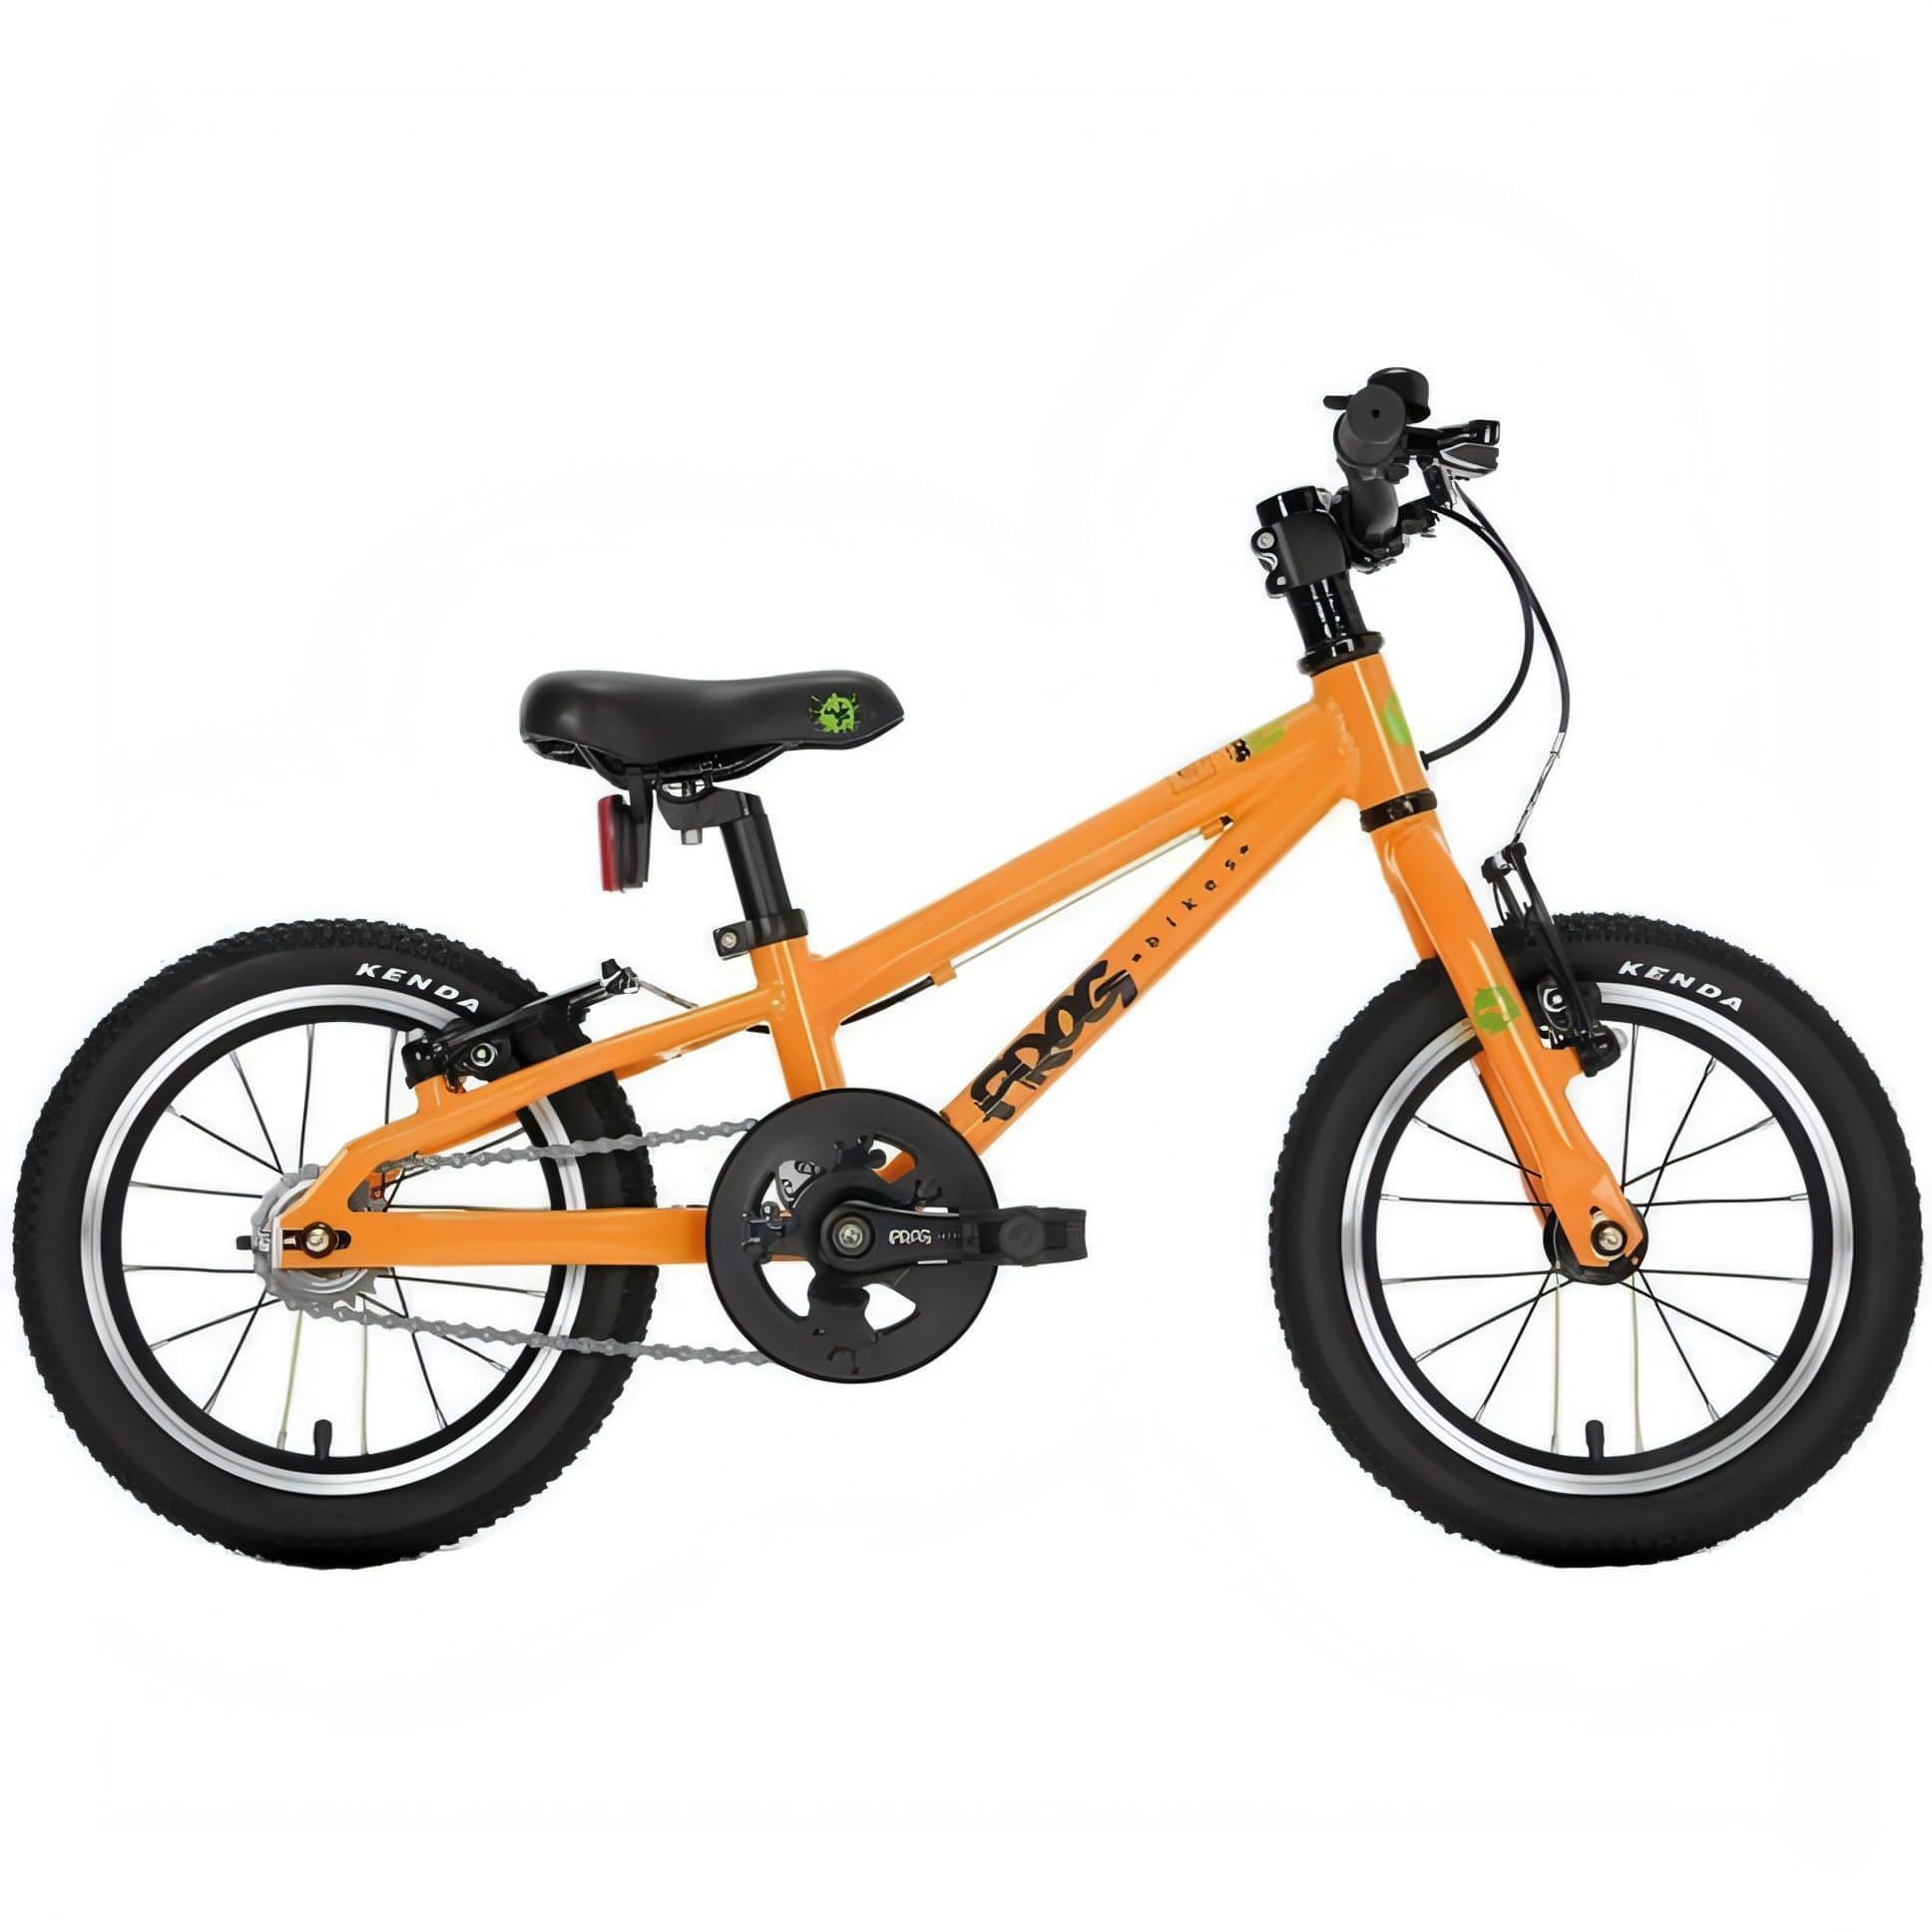 Frog 40 14" Junior Bike 2021 - Orange 5060488651304 - Start Fitness